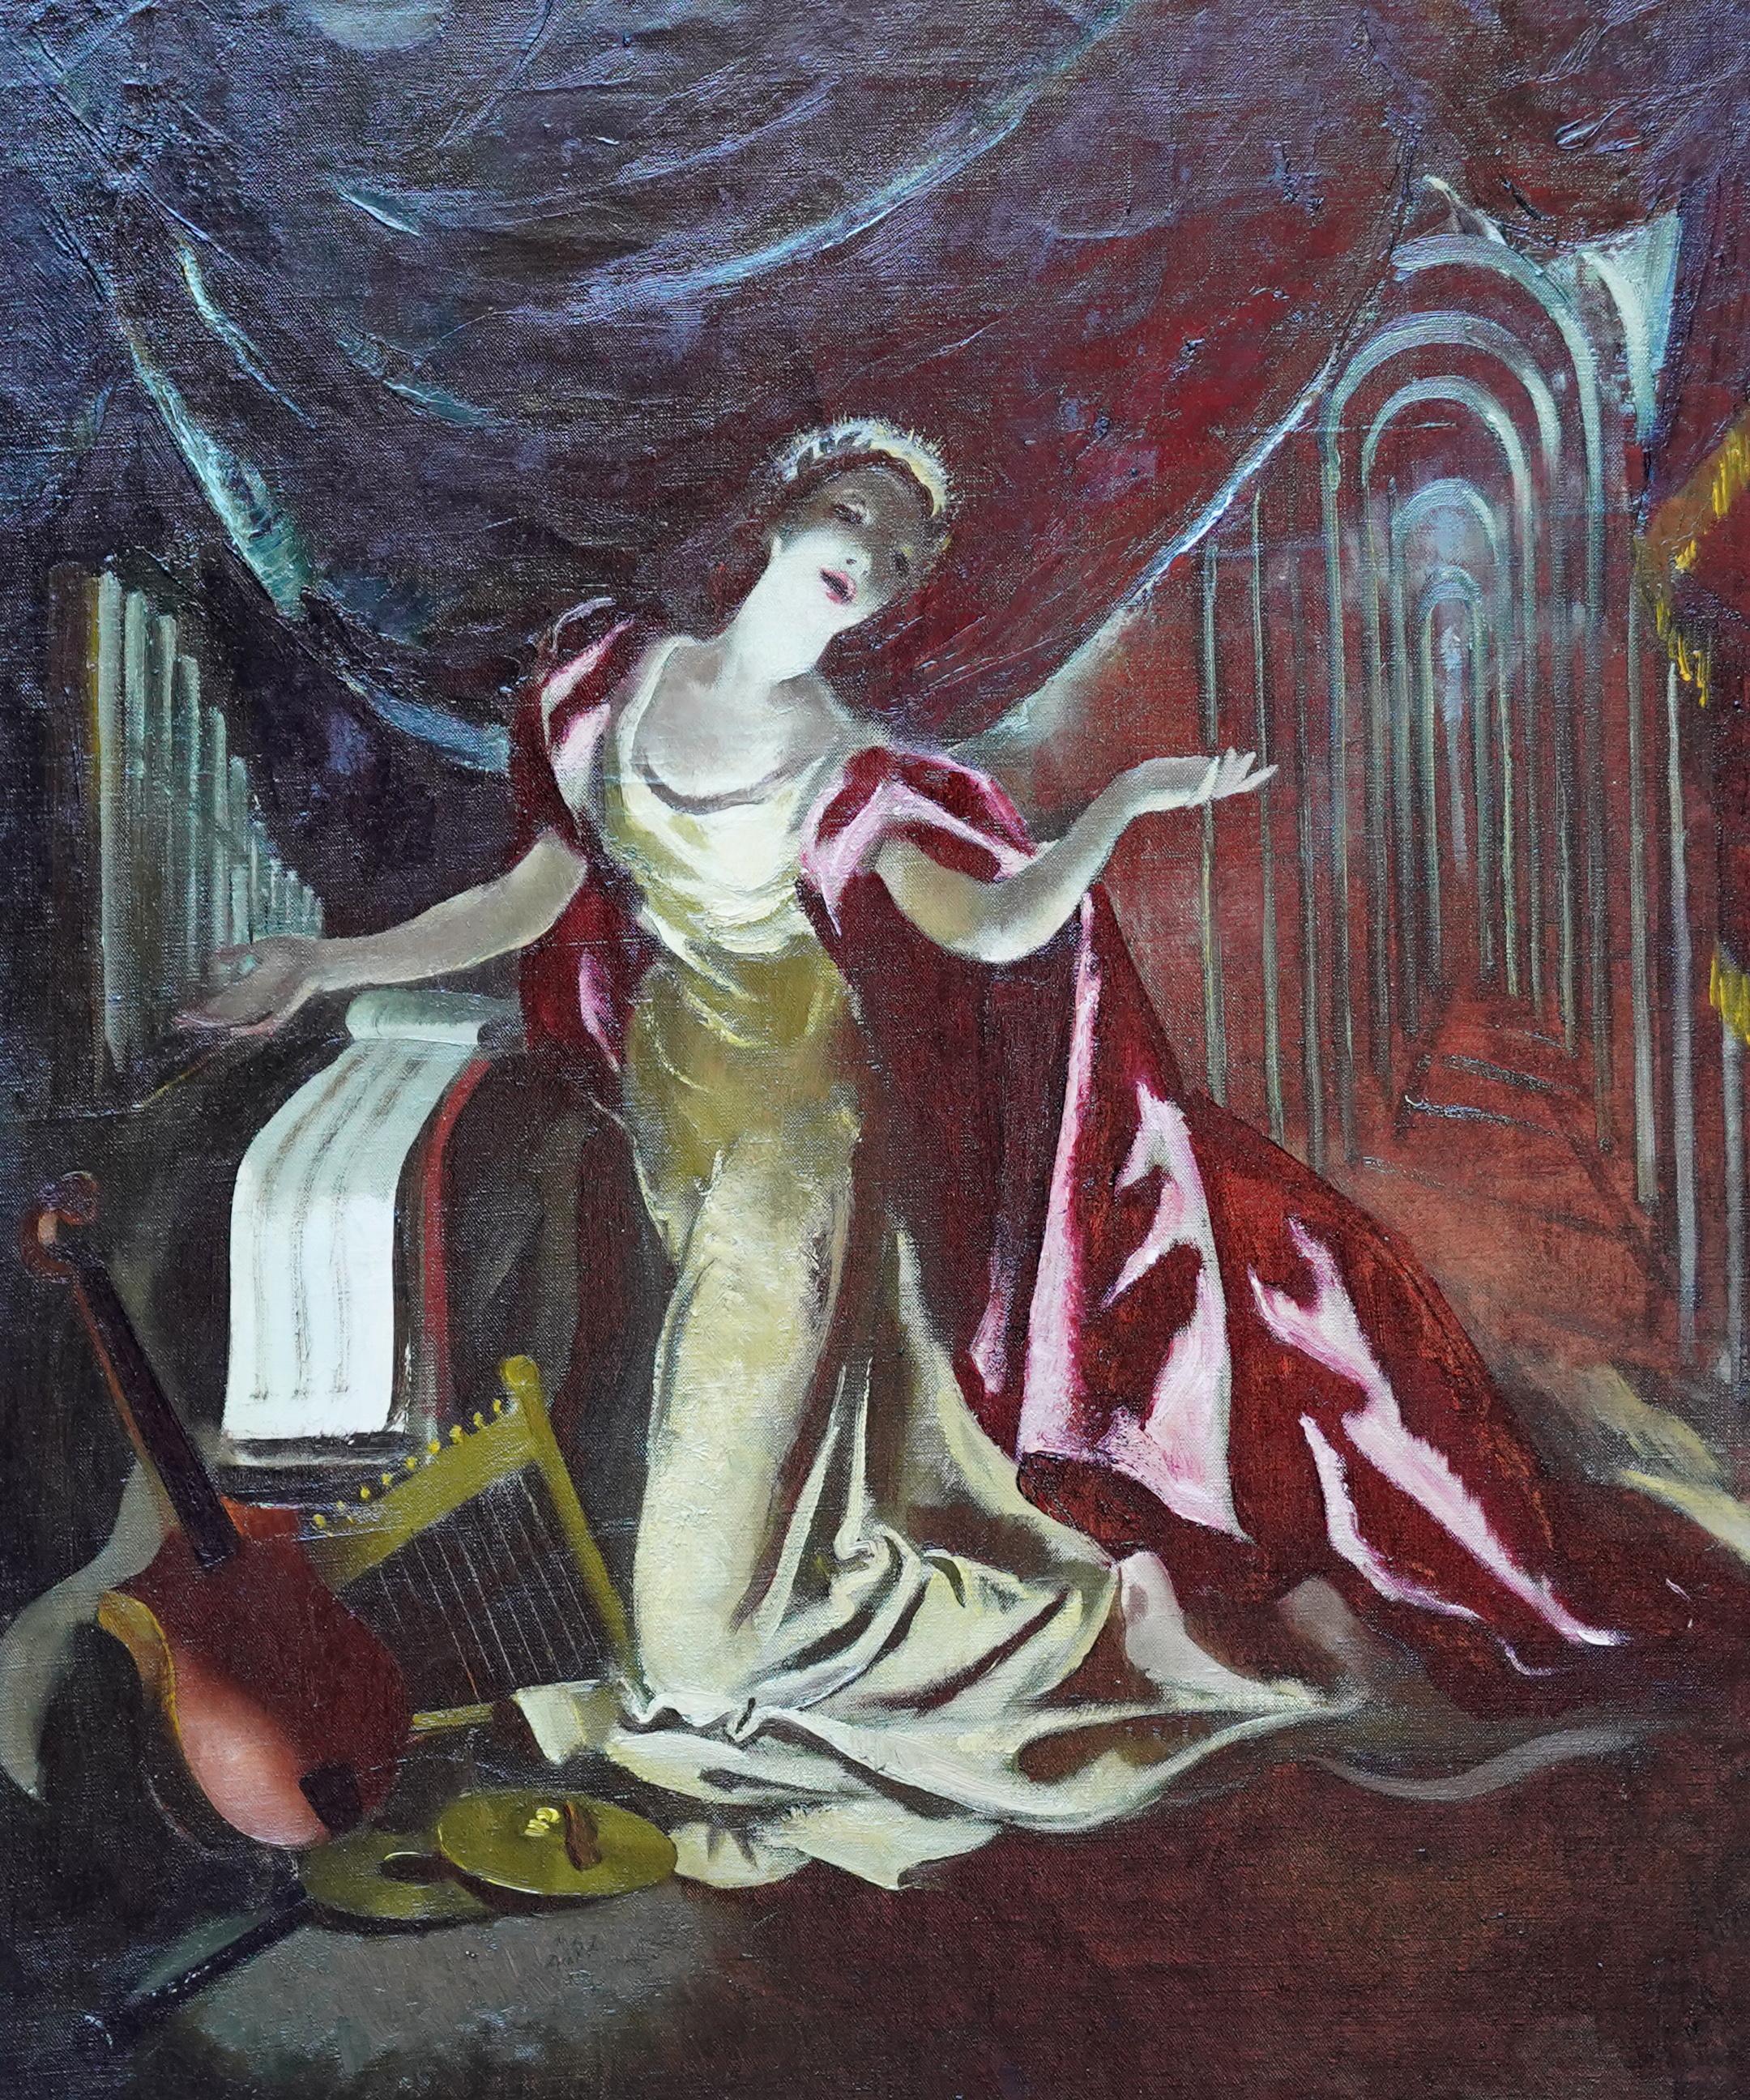 Portrait sur scène - Cape rouge - Peinture à l'huile d'un portrait théâtral écossais des années 60 - Painting de Doris Zinkeisen